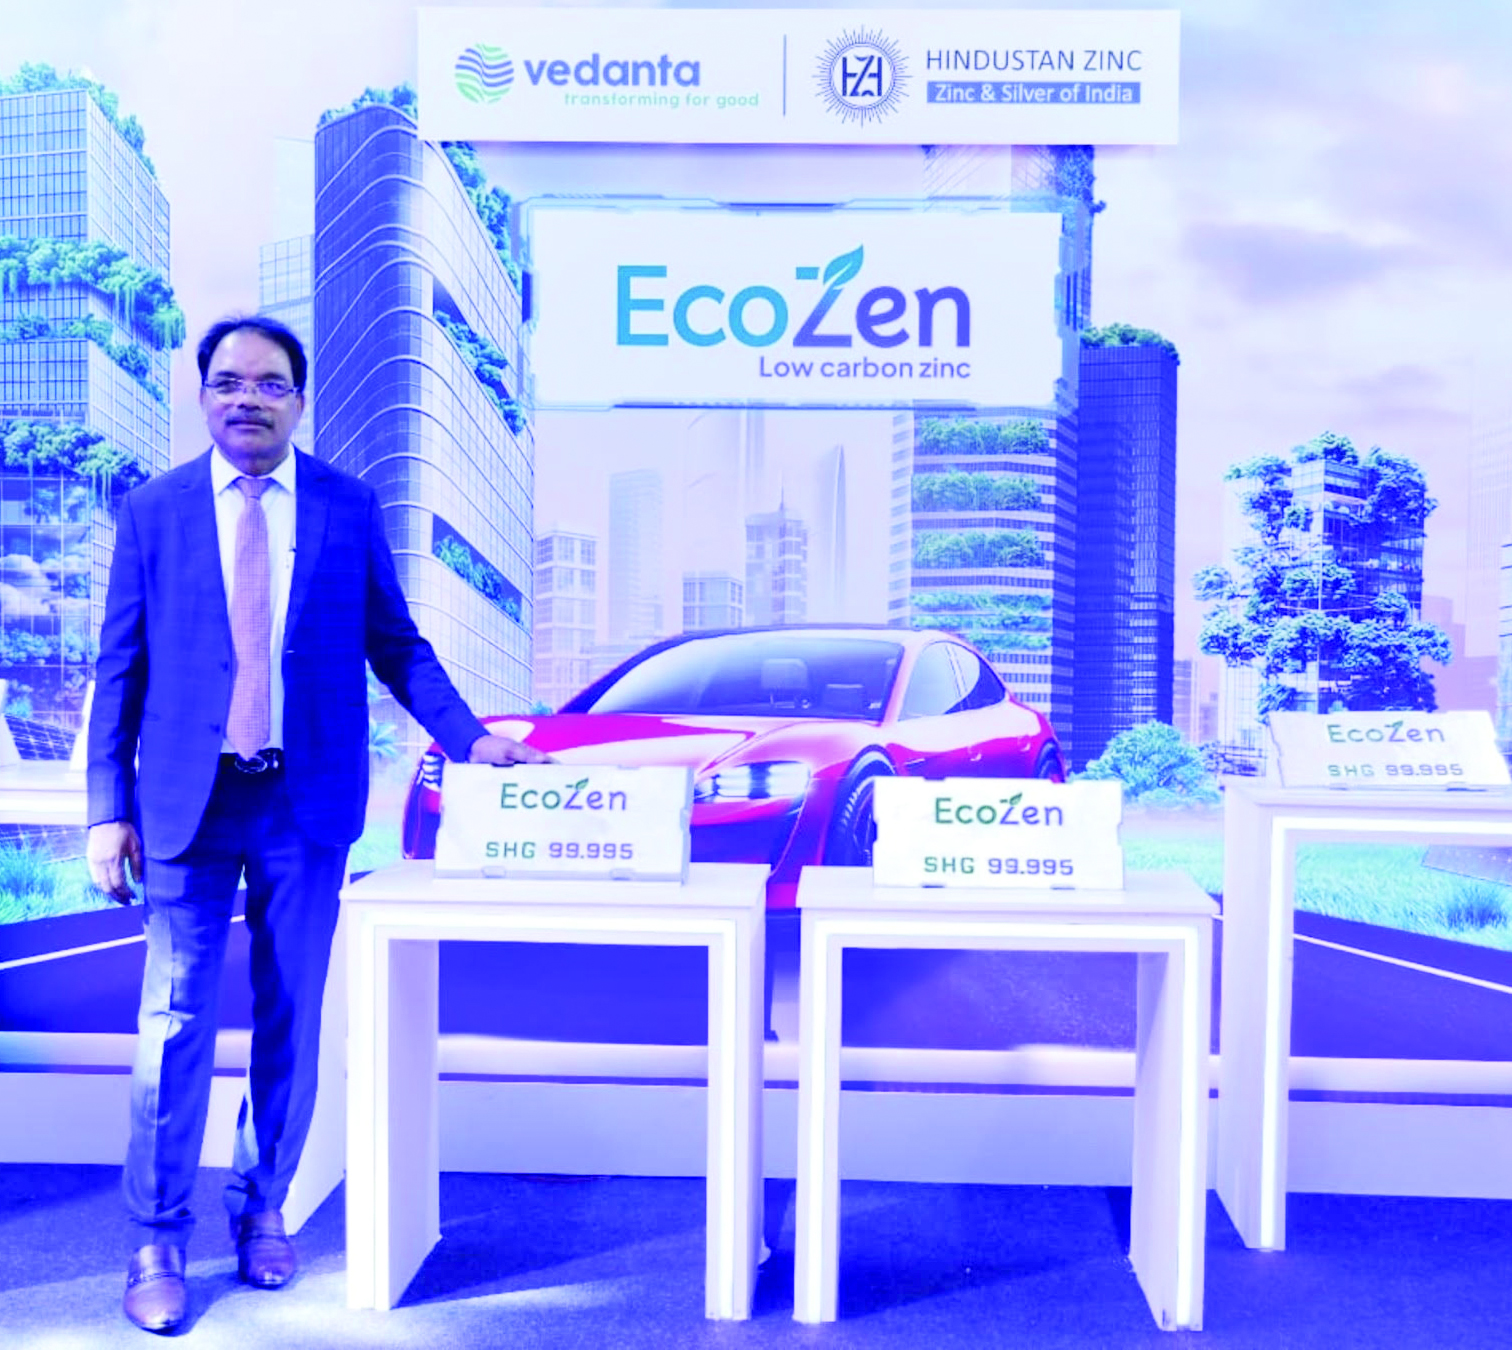 एशिया का पहला लो कार्बन जिंक इकोजेन वेदांता हिंदुस्तान जिंक कंपनी ने किया लांच